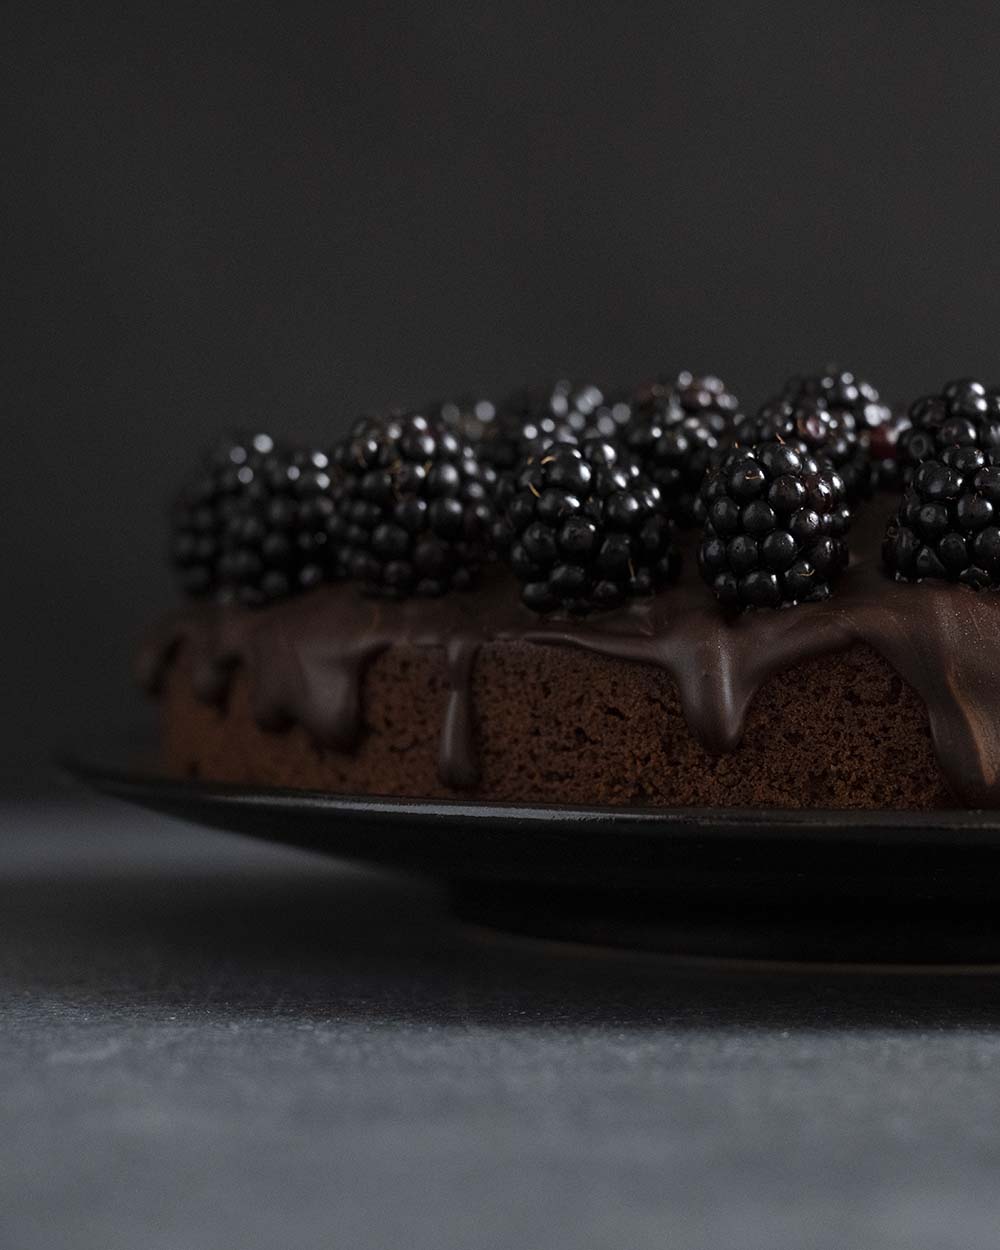 Ausschnitt unseres ferti dekorierten und lasierten Schokoladenkuchen mit Brombeeren. An der Seite läuft etwas geschmolzene Schokolade herunter.